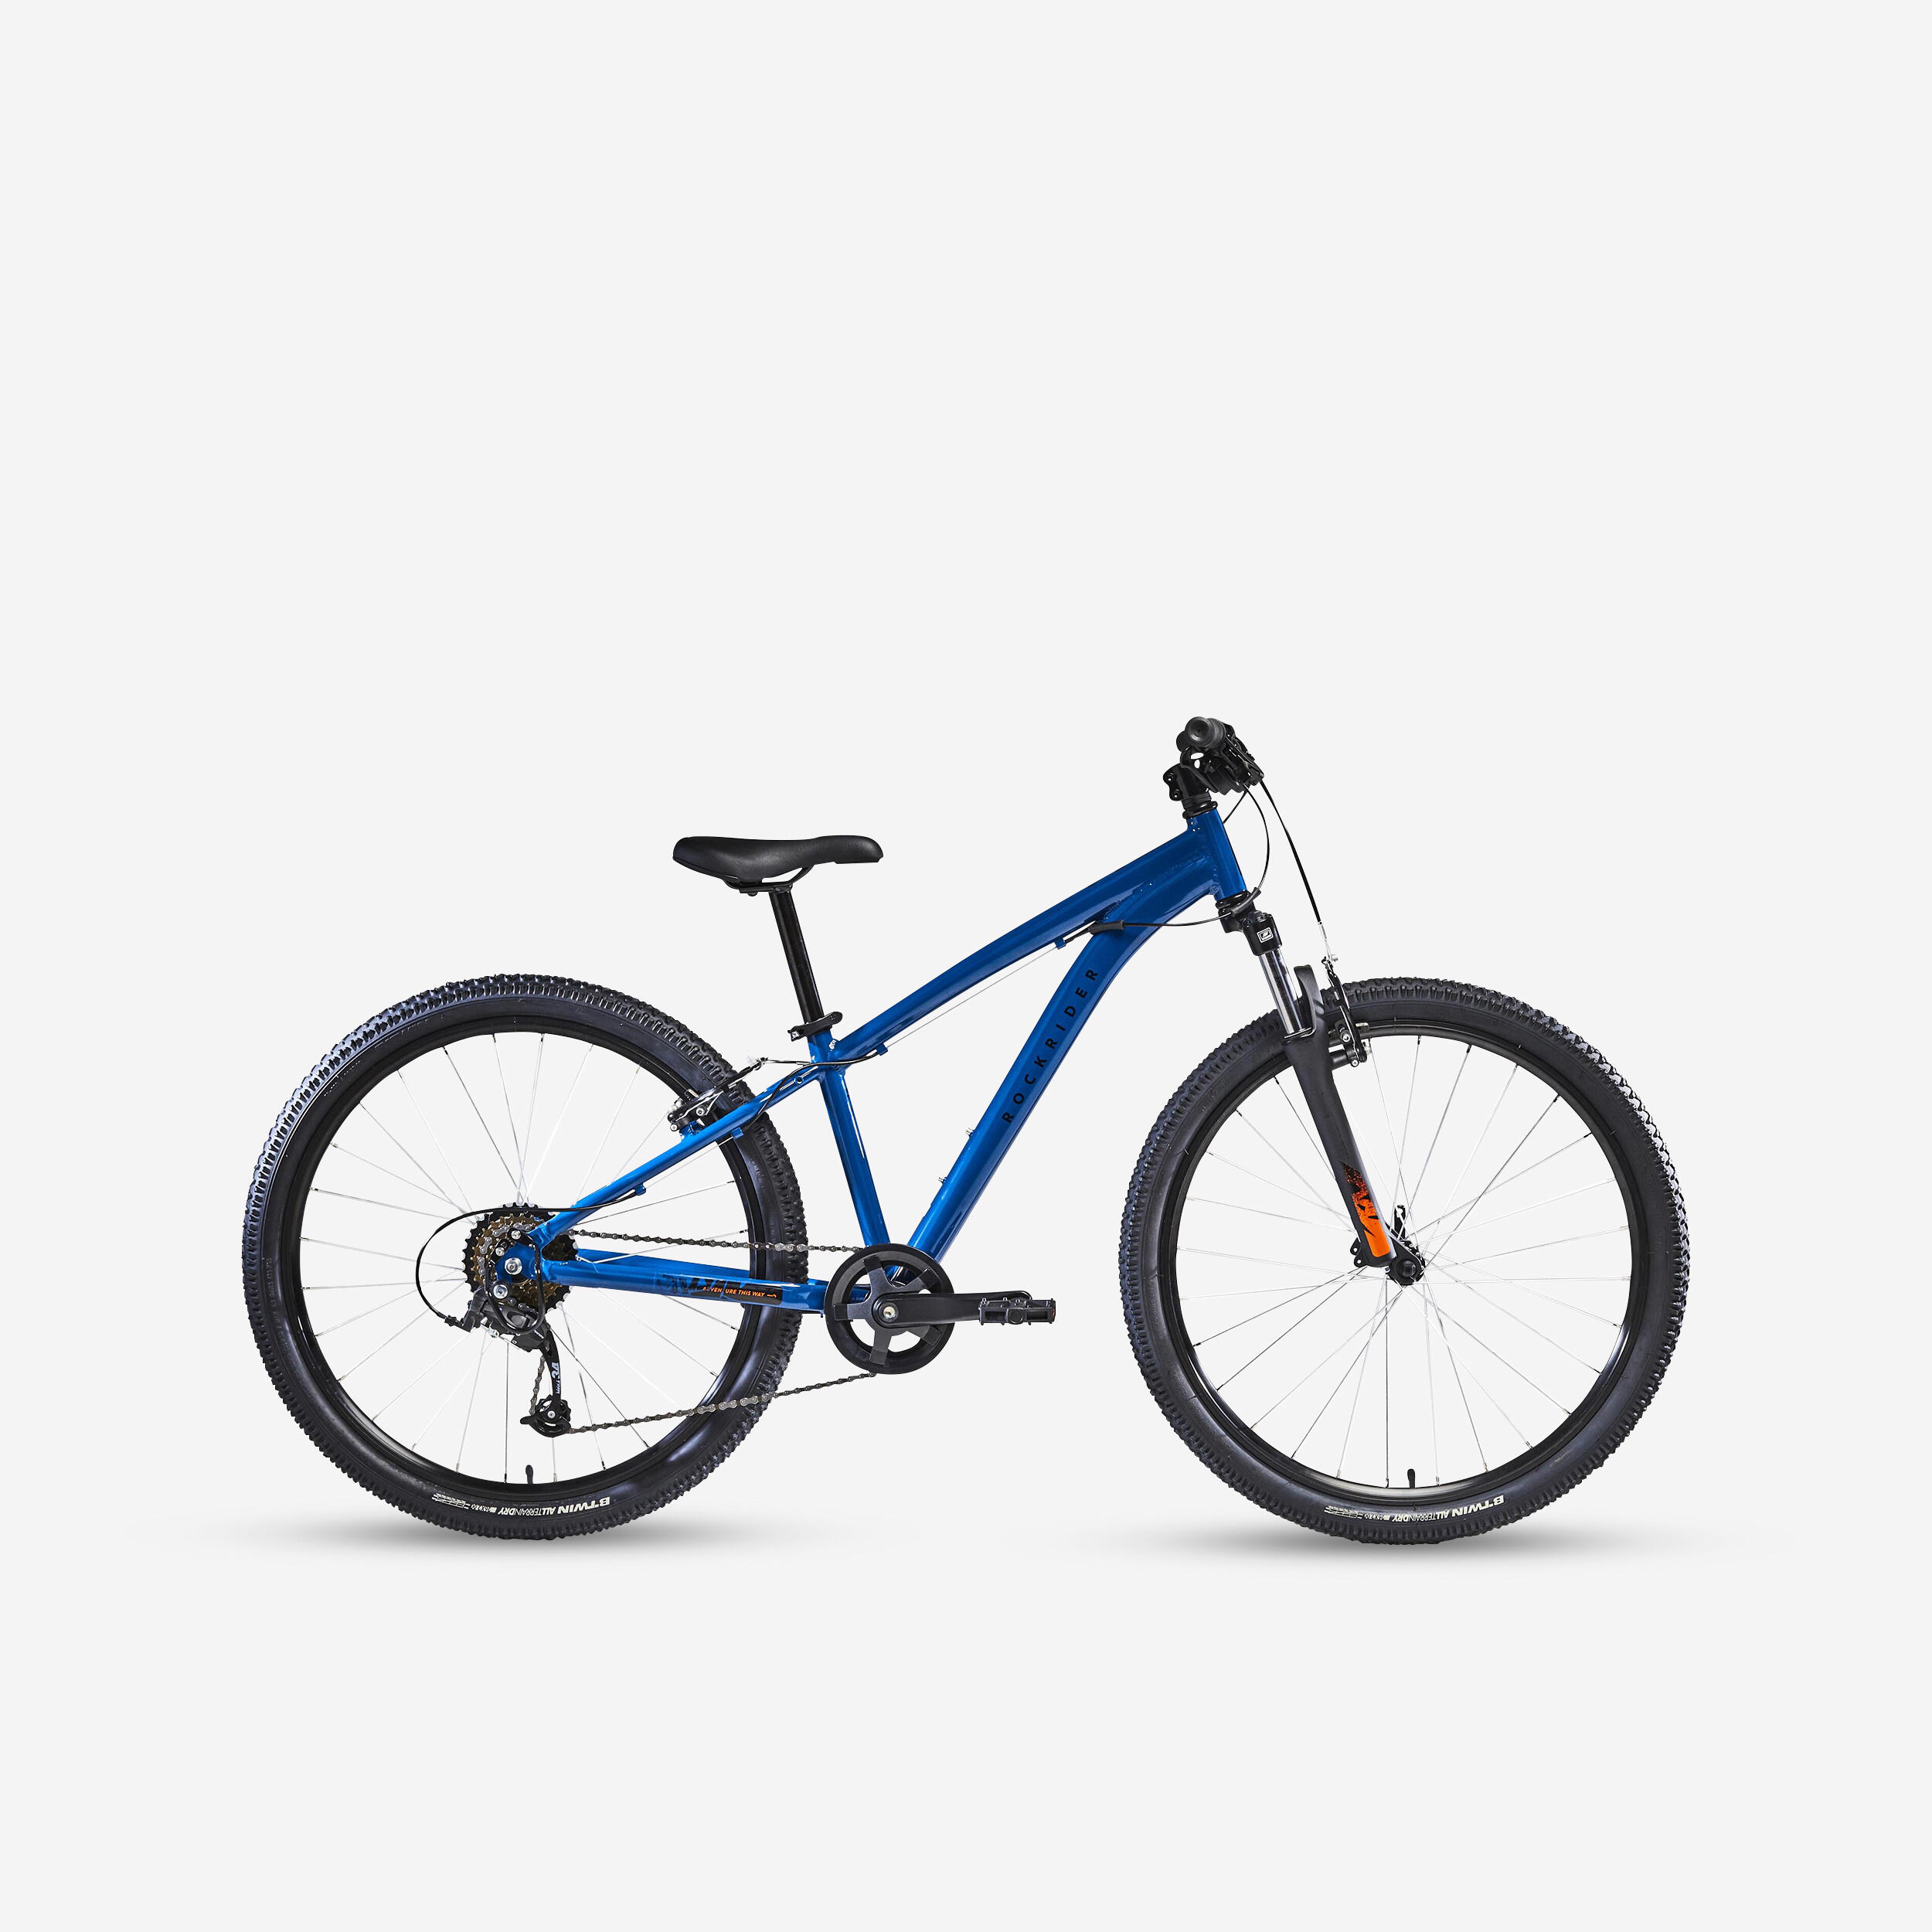 Kids' 26-inch lightweight aluminium mountain bike, blue 1/18